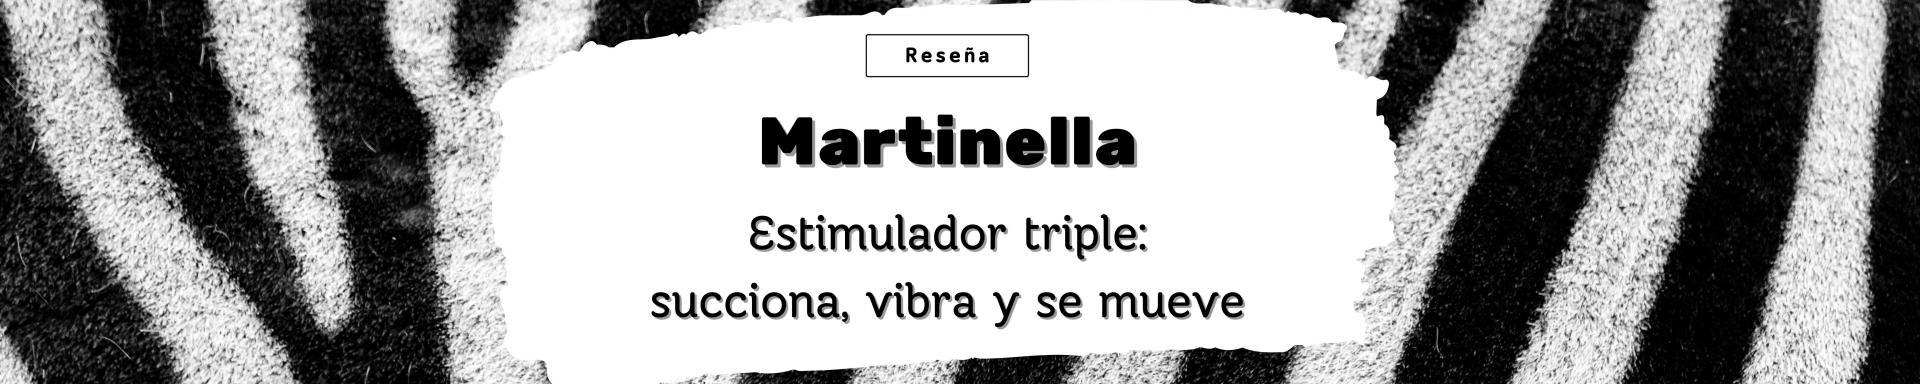 Martinella: estimulador triple